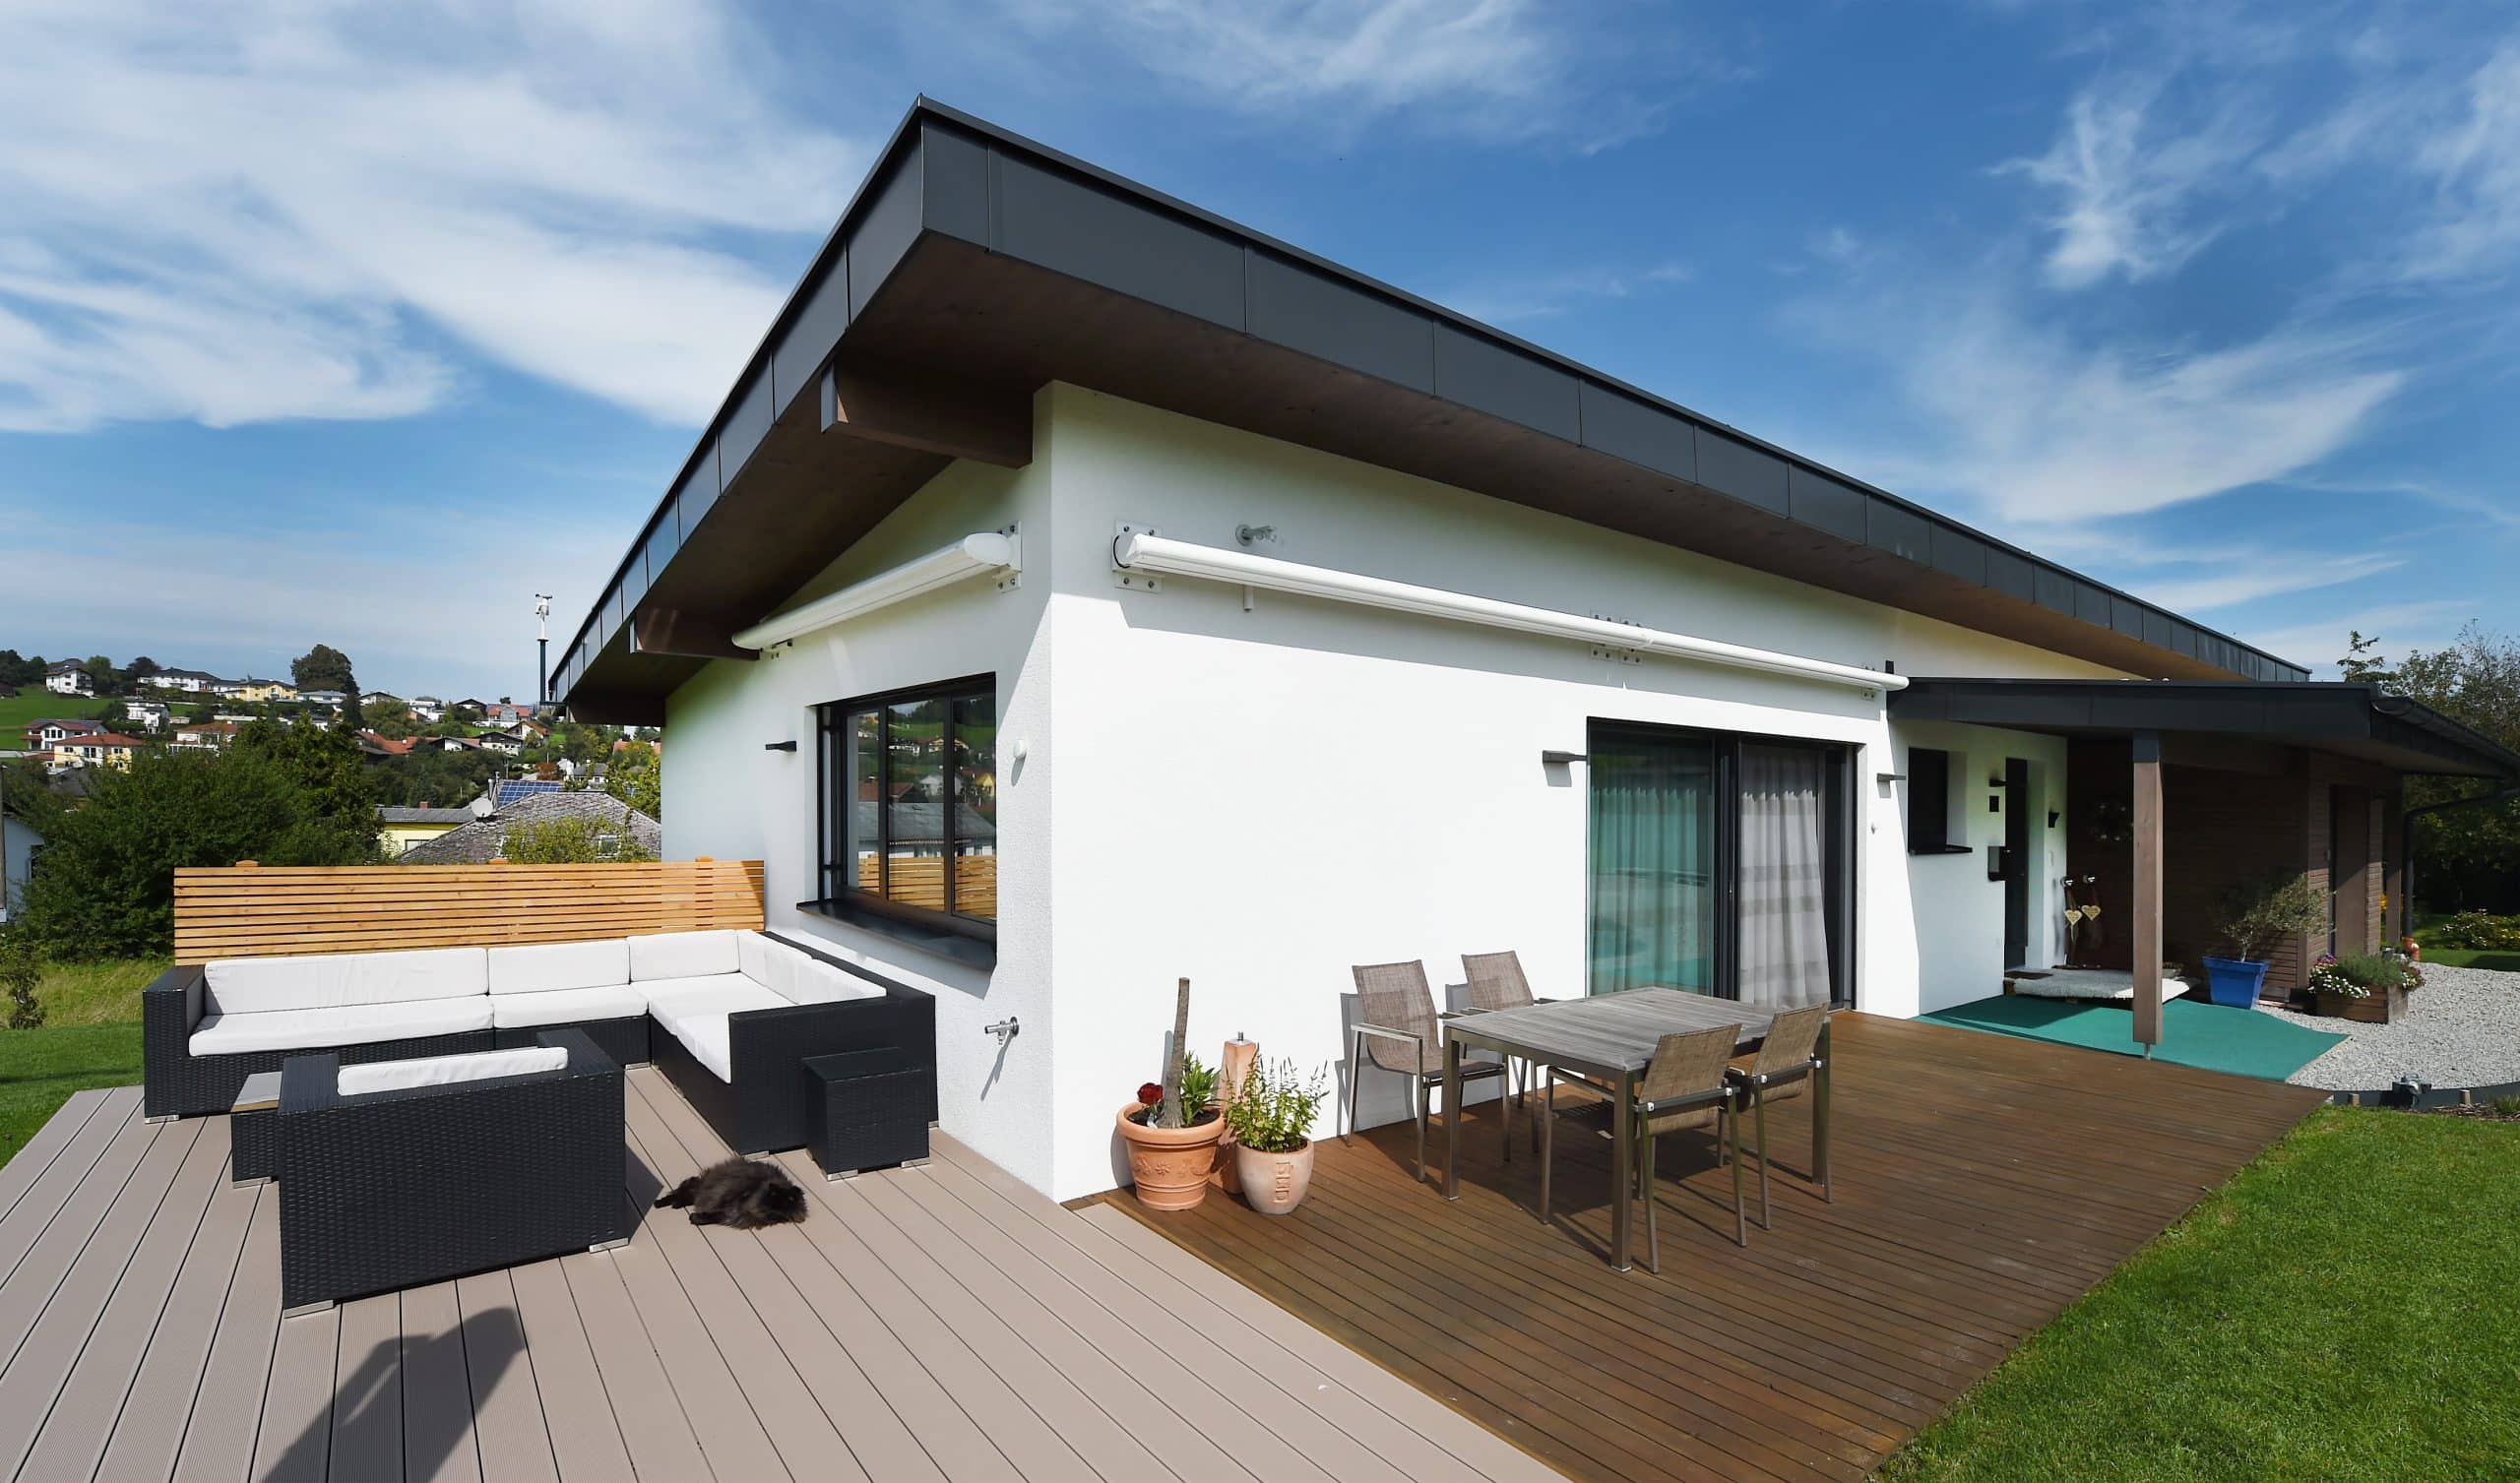 Ein modernes weisses Haus mit Flachdach und einer Terrasse mit einer Sitzgruppe und gemütlicher Sitzlounge auf Holzboden von ERLER BAU GmbH.